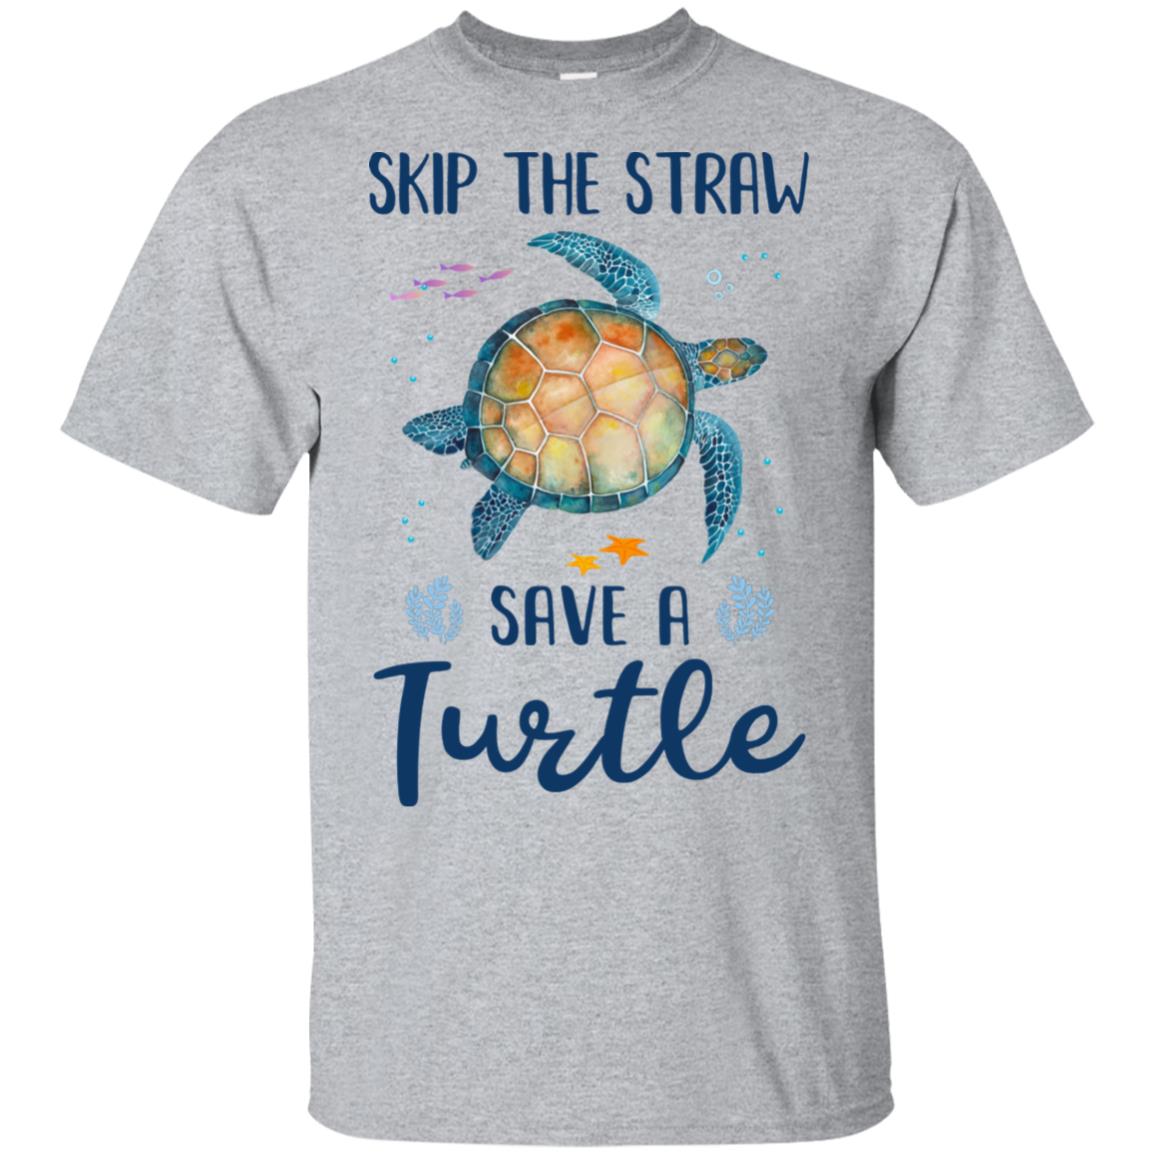 Save Turtles T Shirt 